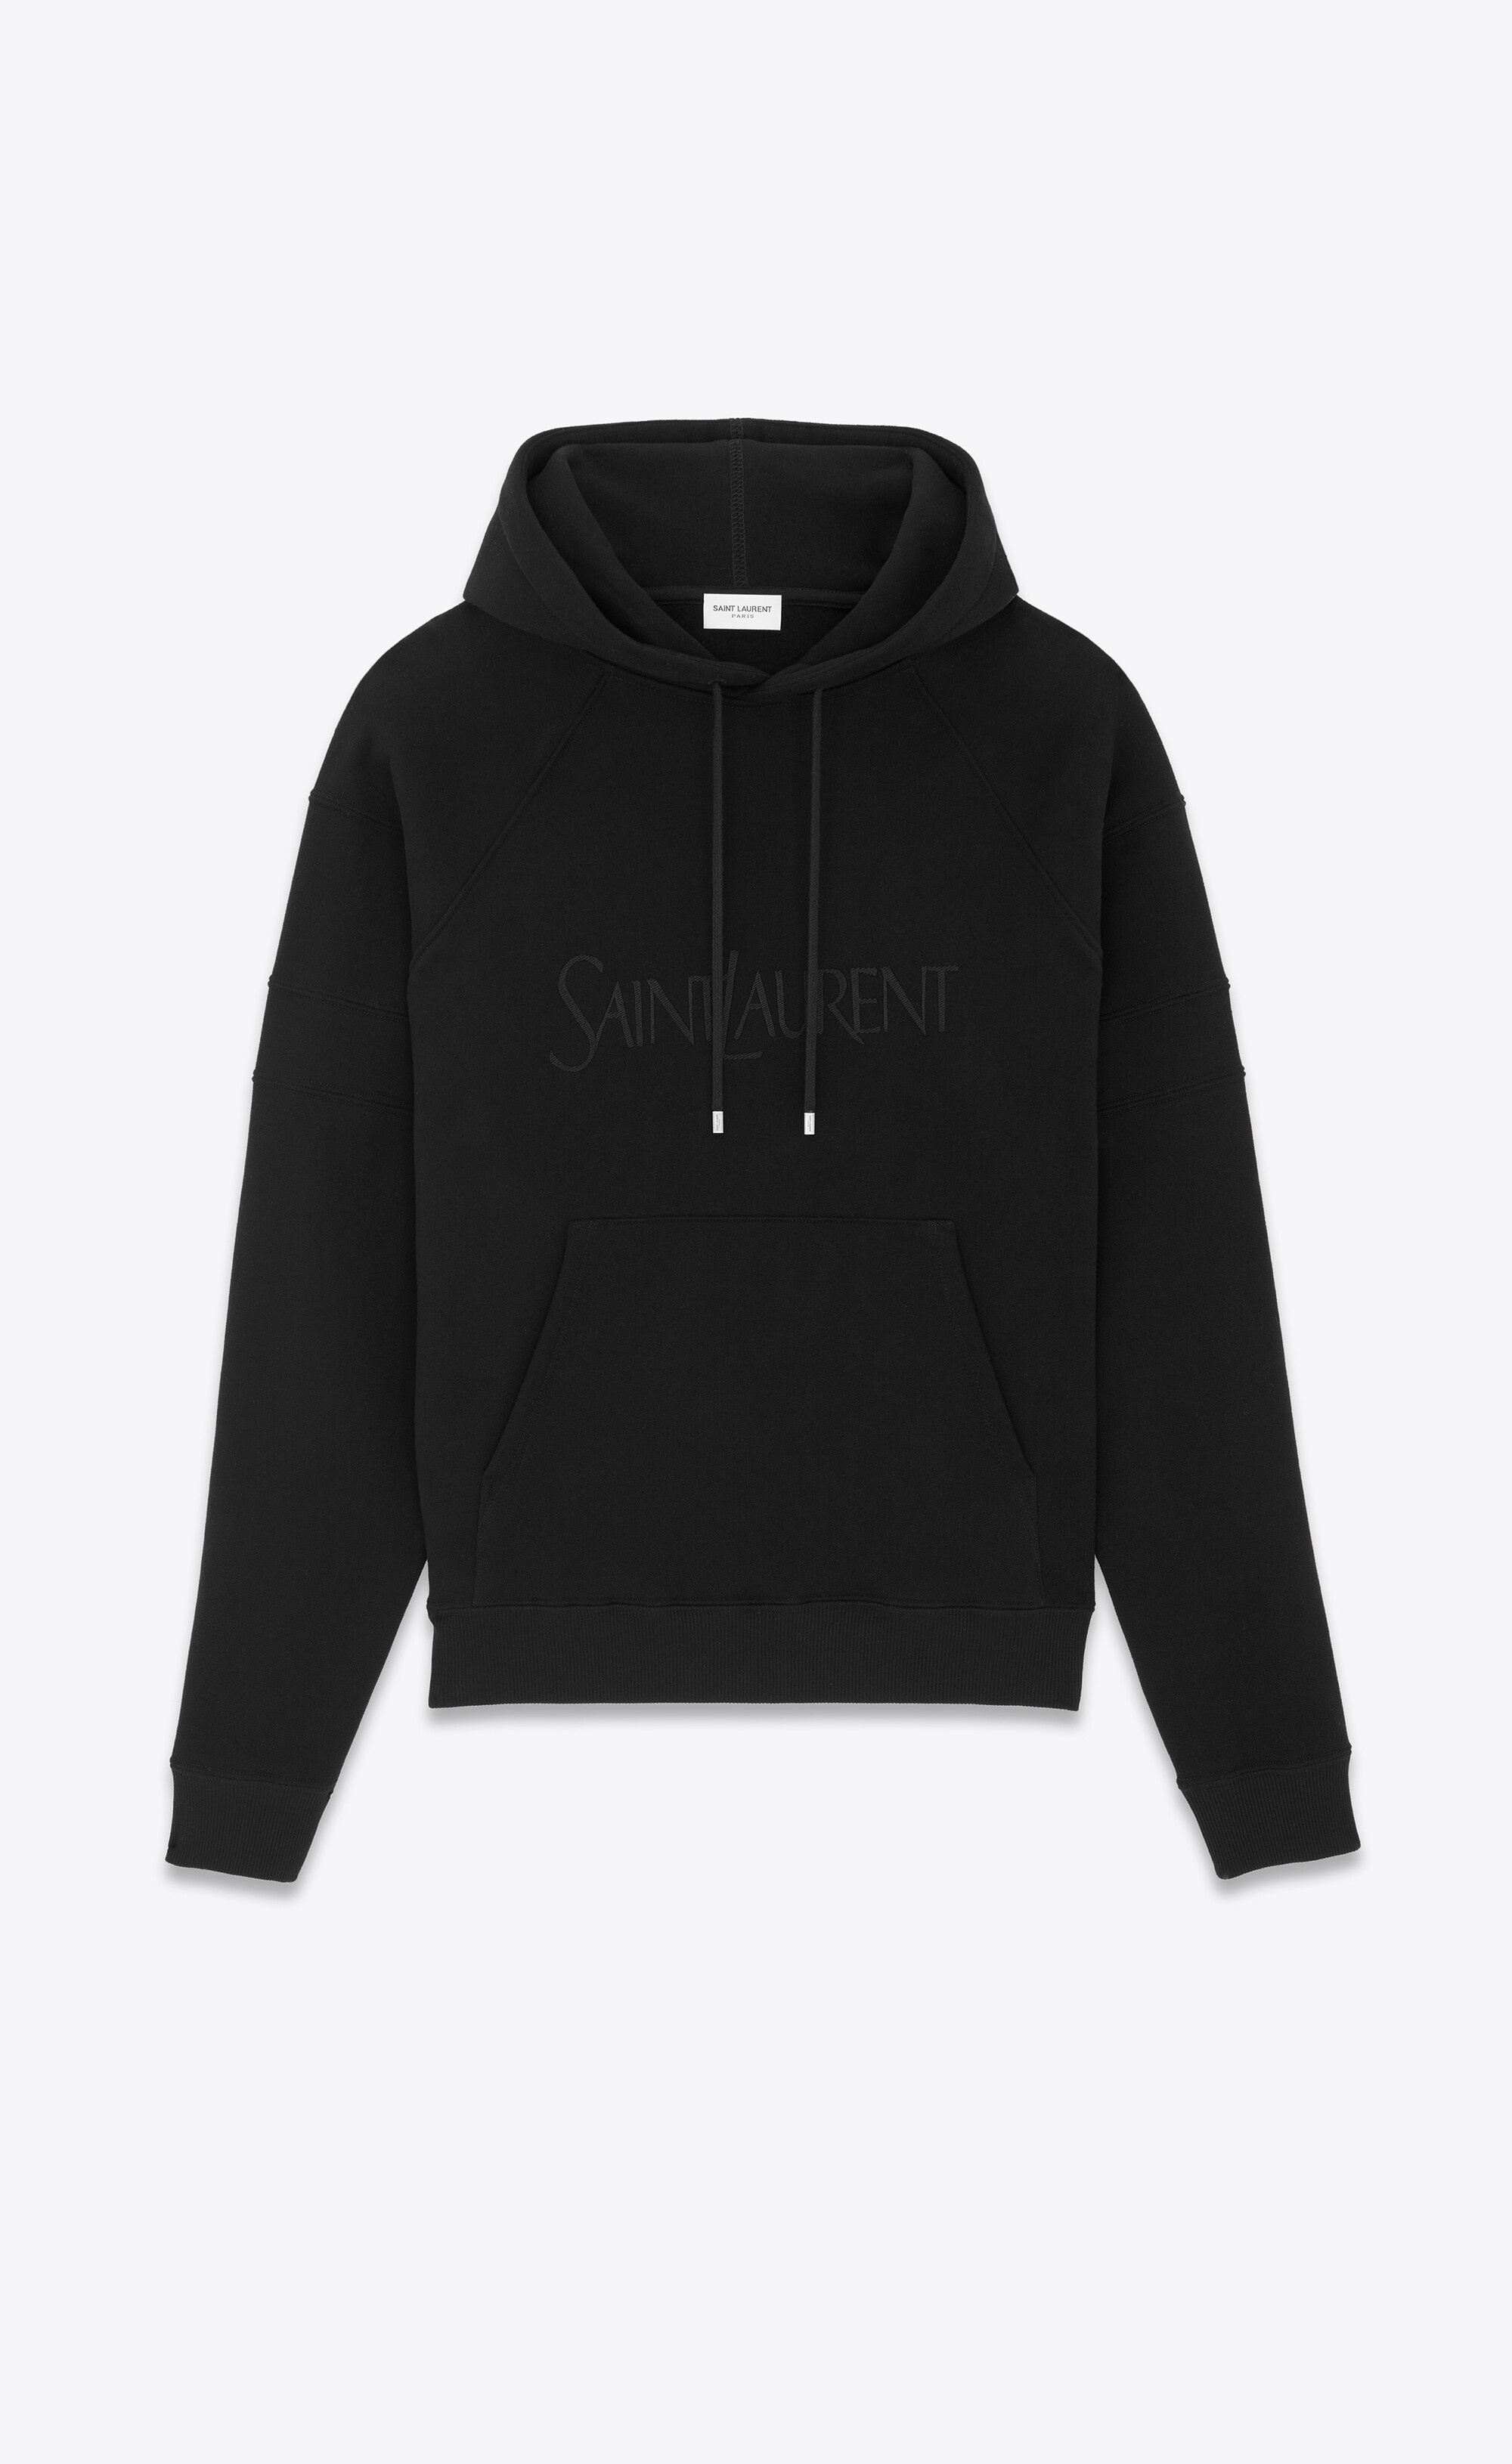 saint laurent hoodie - 1